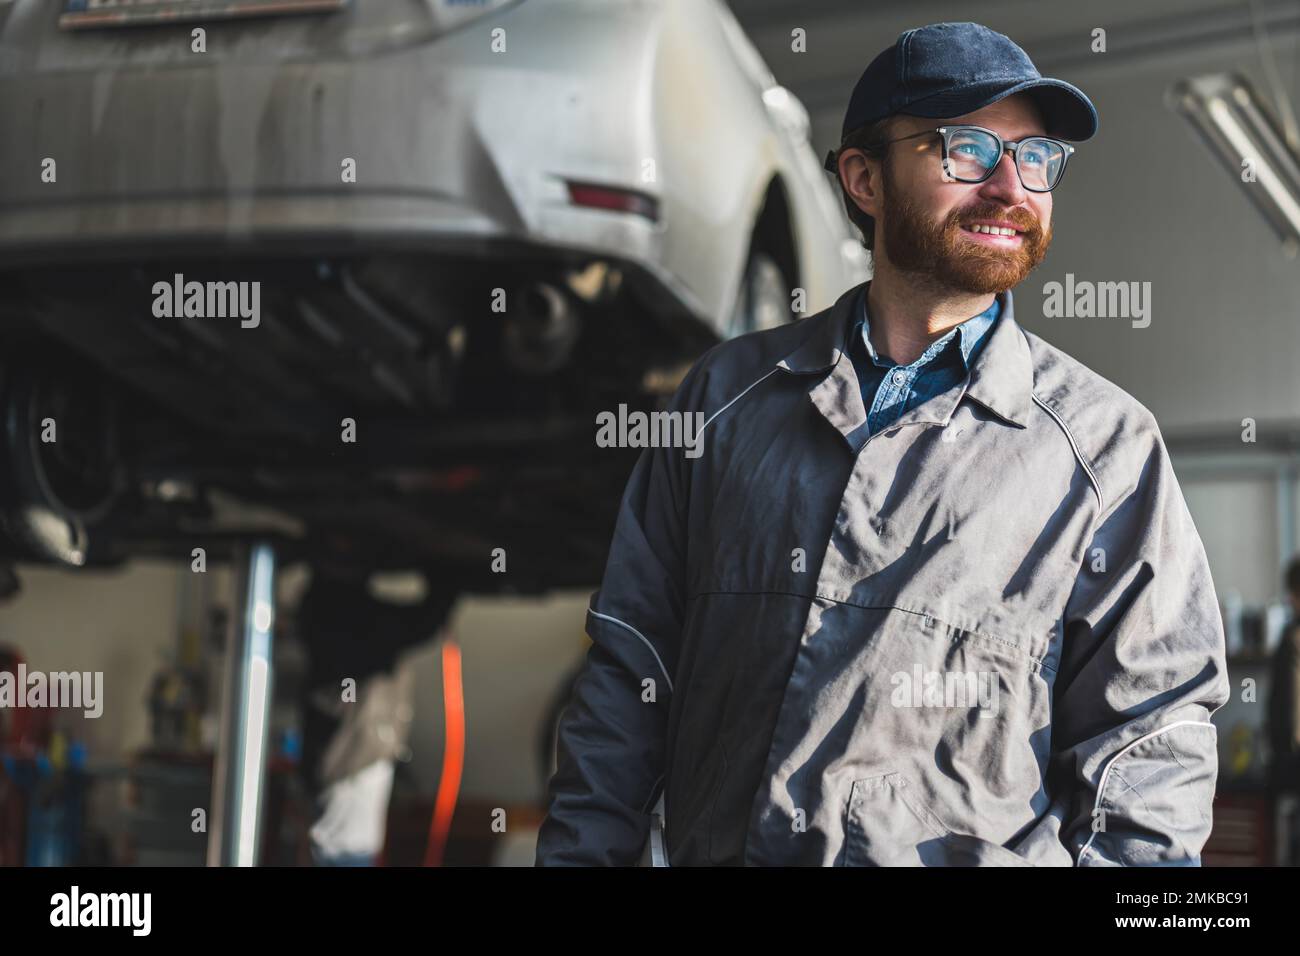 Mechaniker ist Ölwechsel im Auto mit alten Plastikflasche als Trichter  Stockfotografie - Alamy